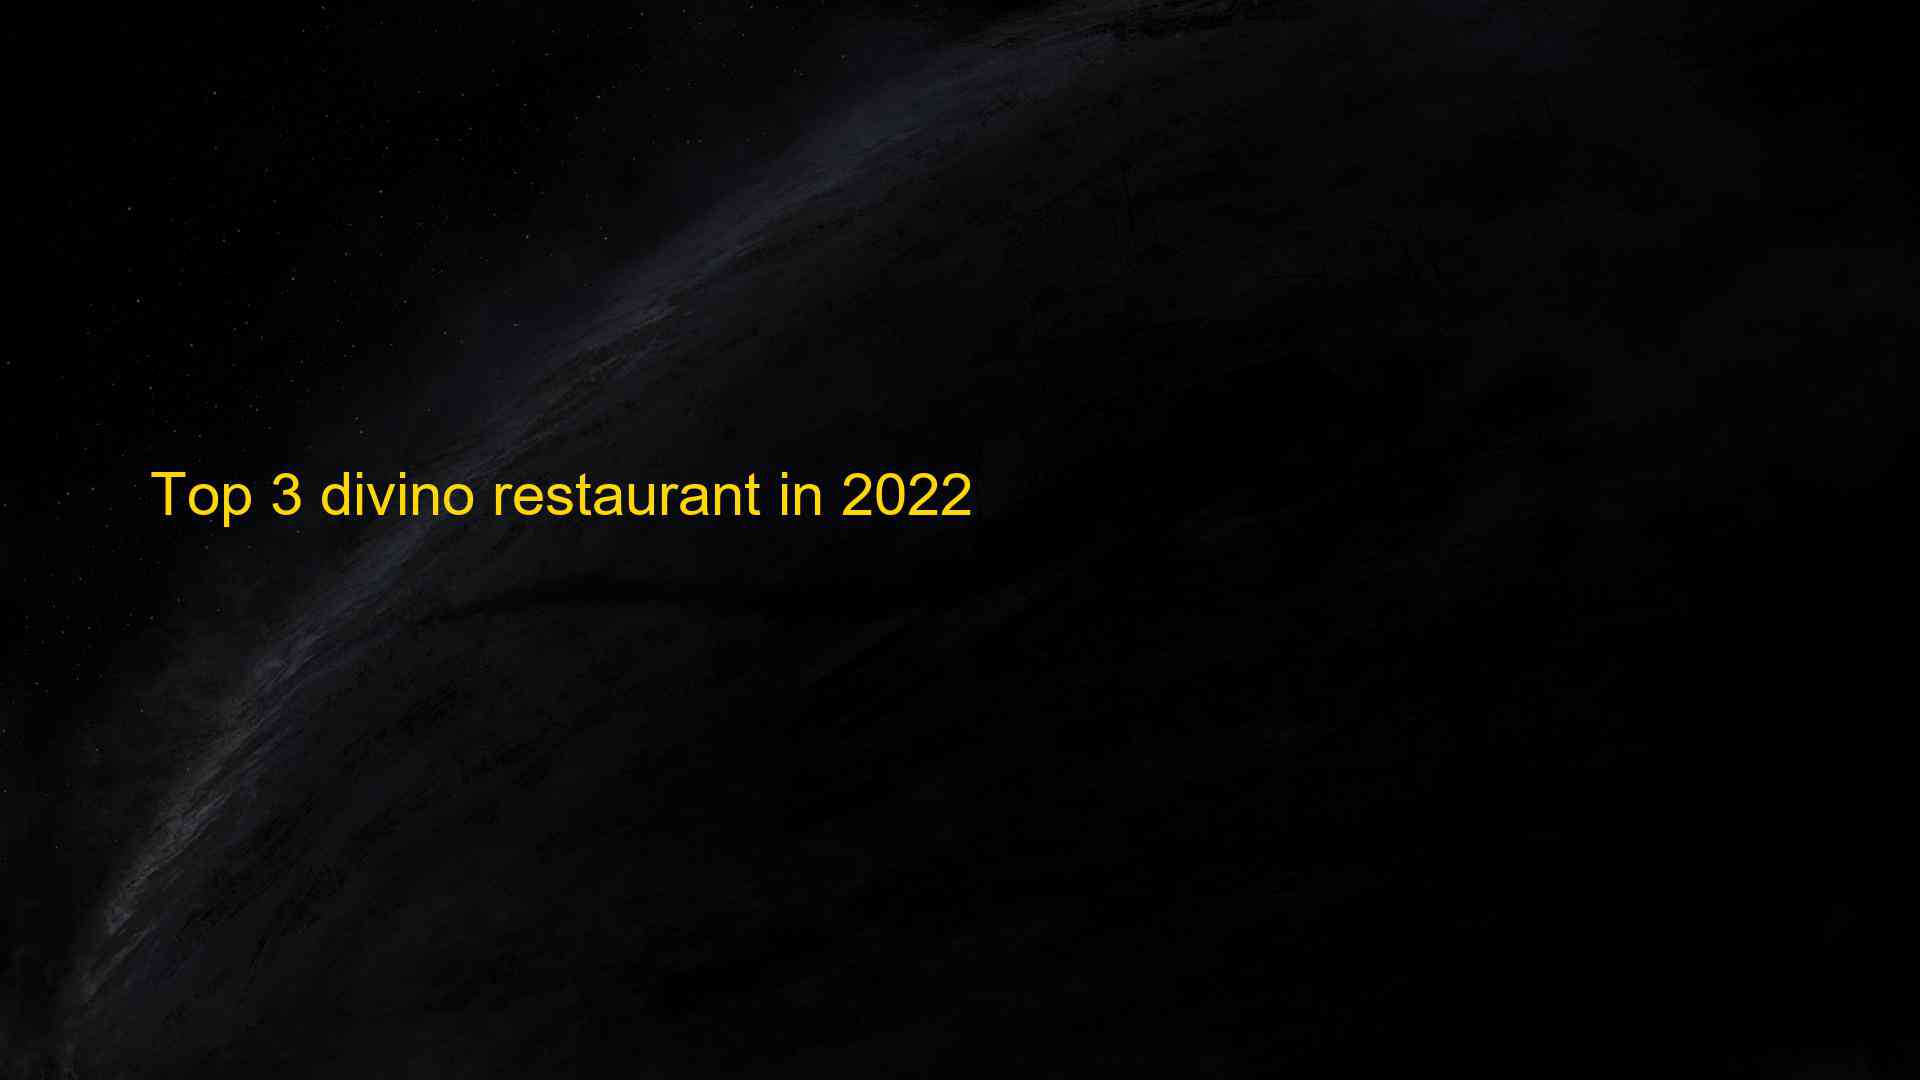 Top 3 divino restaurant in 2022 1663536520